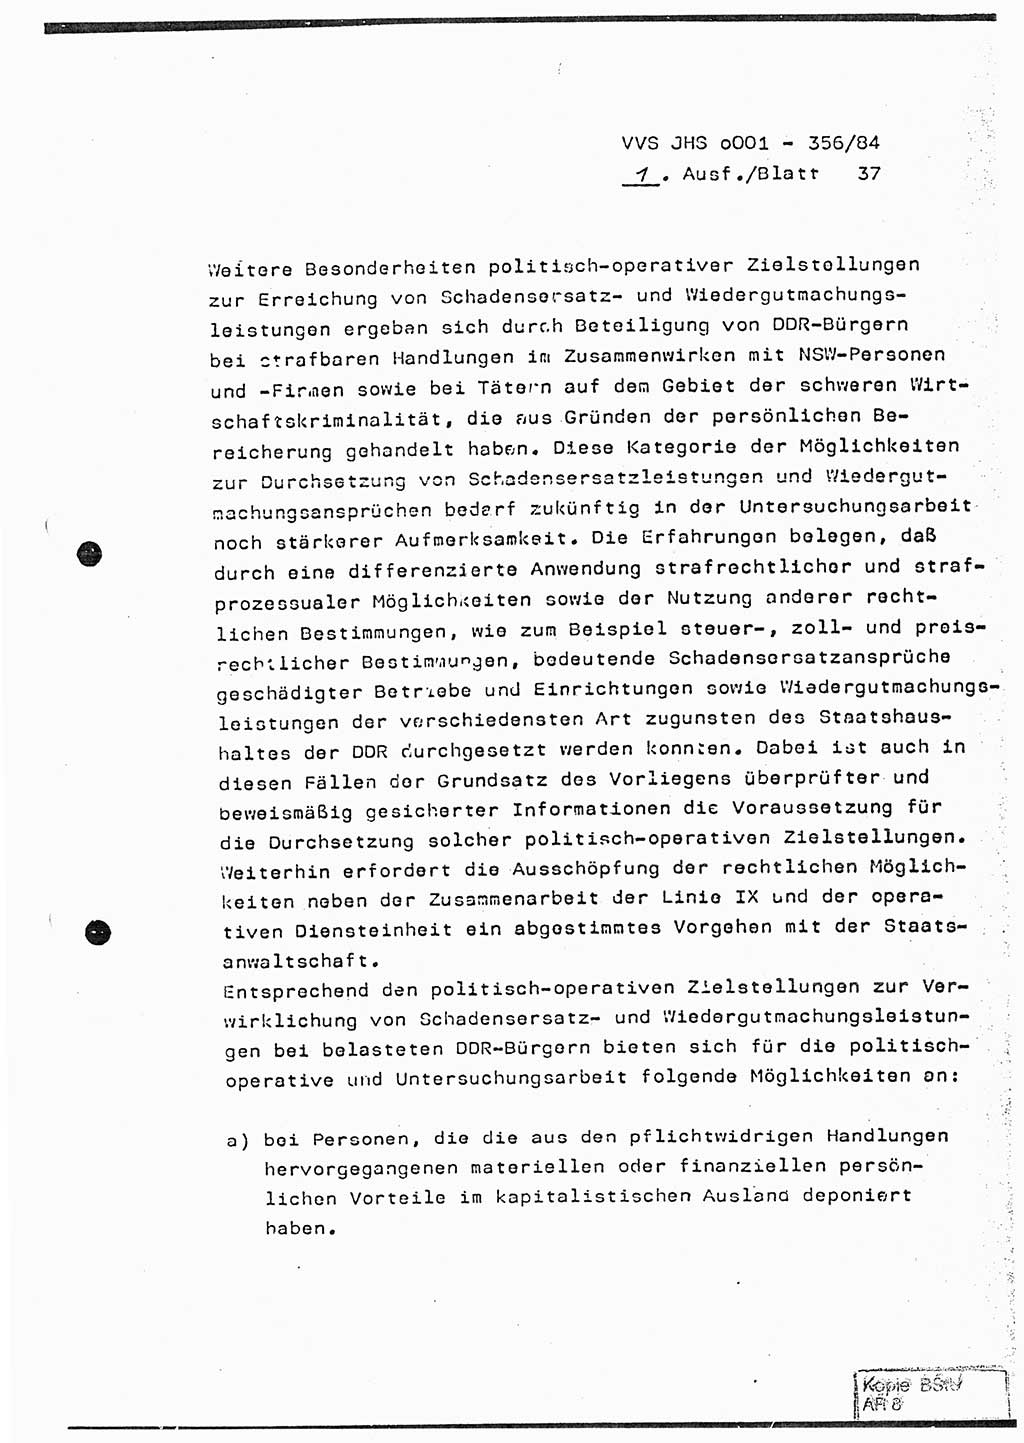 Diplomarbeit, Major Lutz Rahaus (HA Ⅸ/3), Ministerium für Staatssicherheit (MfS) [Deutsche Demokratische Republik (DDR)], Juristische Hochschule (JHS), Vertrauliche Verschlußsache (VVS) o001-356/84, Potsdam 1984, Seite 37 (Dipl.-Arb. MfS DDR JHS VVS o001-356/84 1984, S. 37)